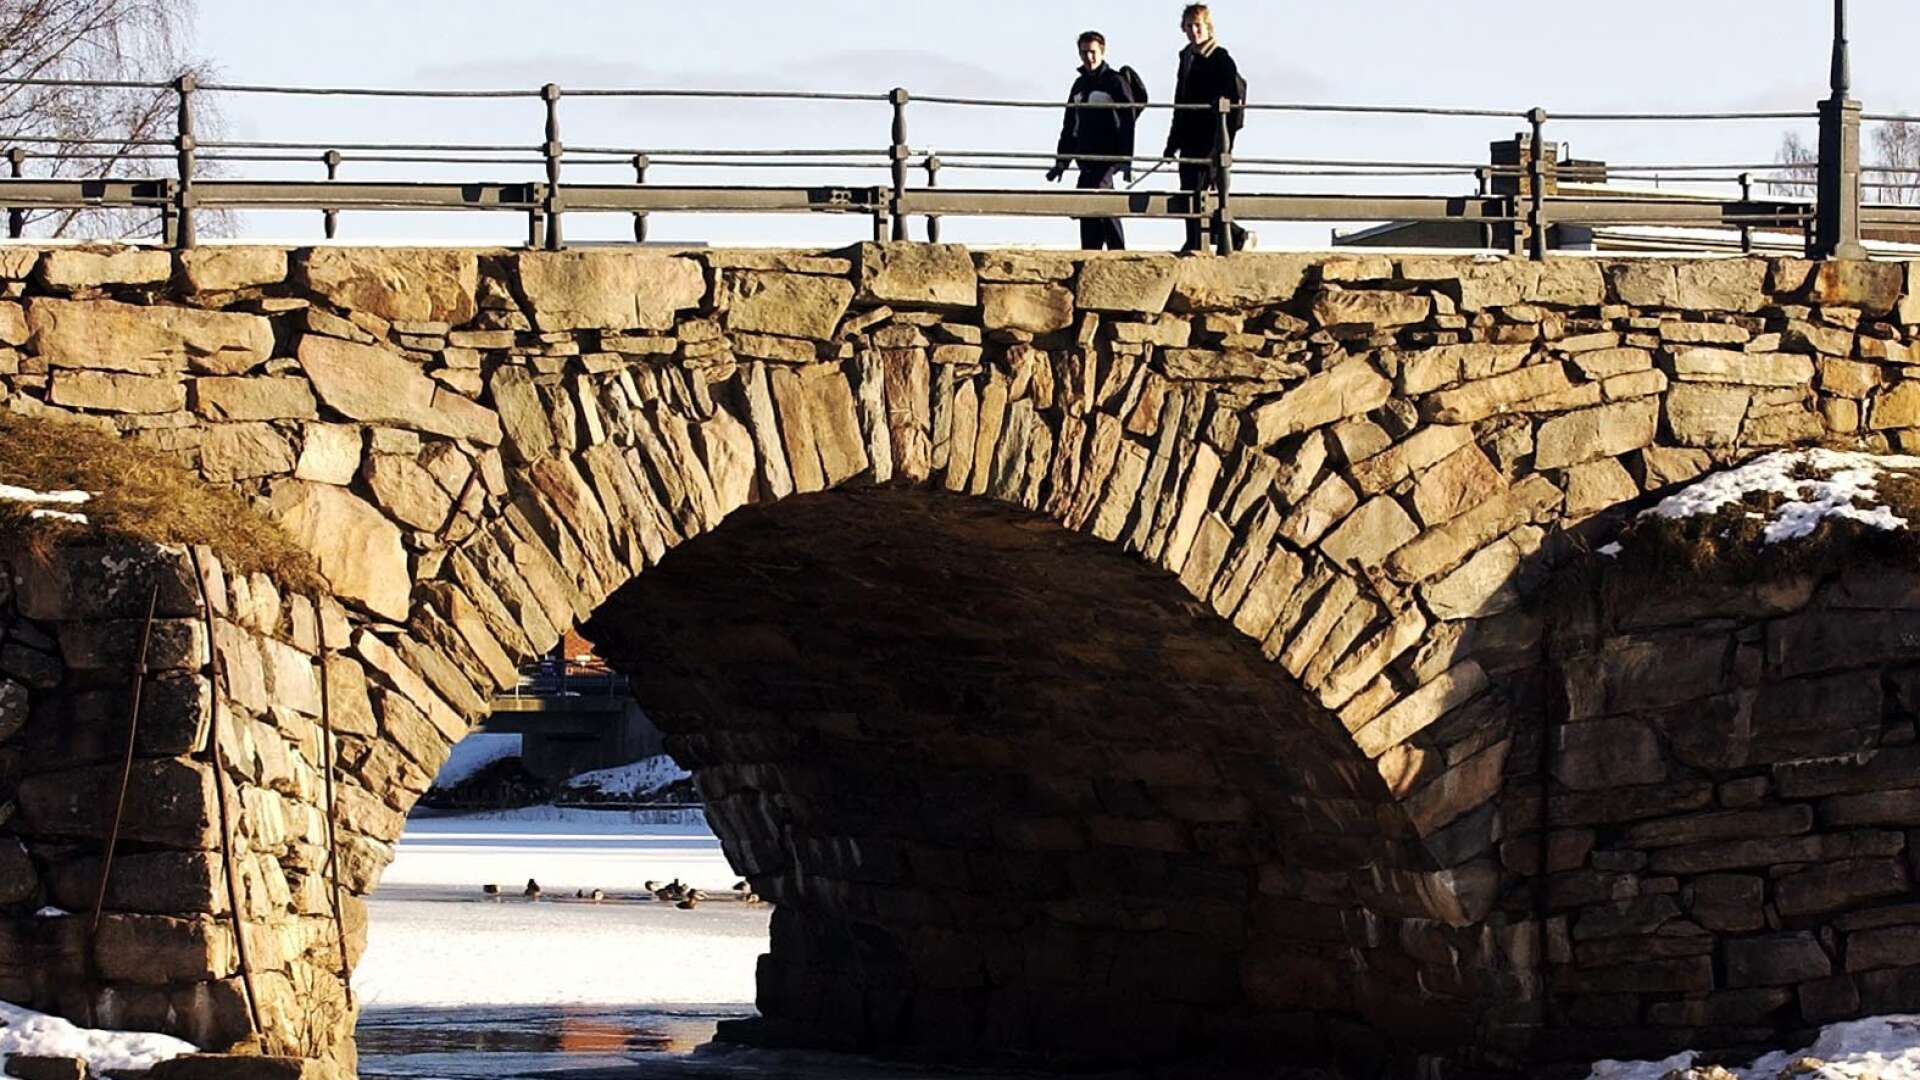 Det finns mycket att upptäcka för den som tar en promenad i Karlstad. Gamla stenbron är en av sevärdheterna som bär med sig mycket historia.